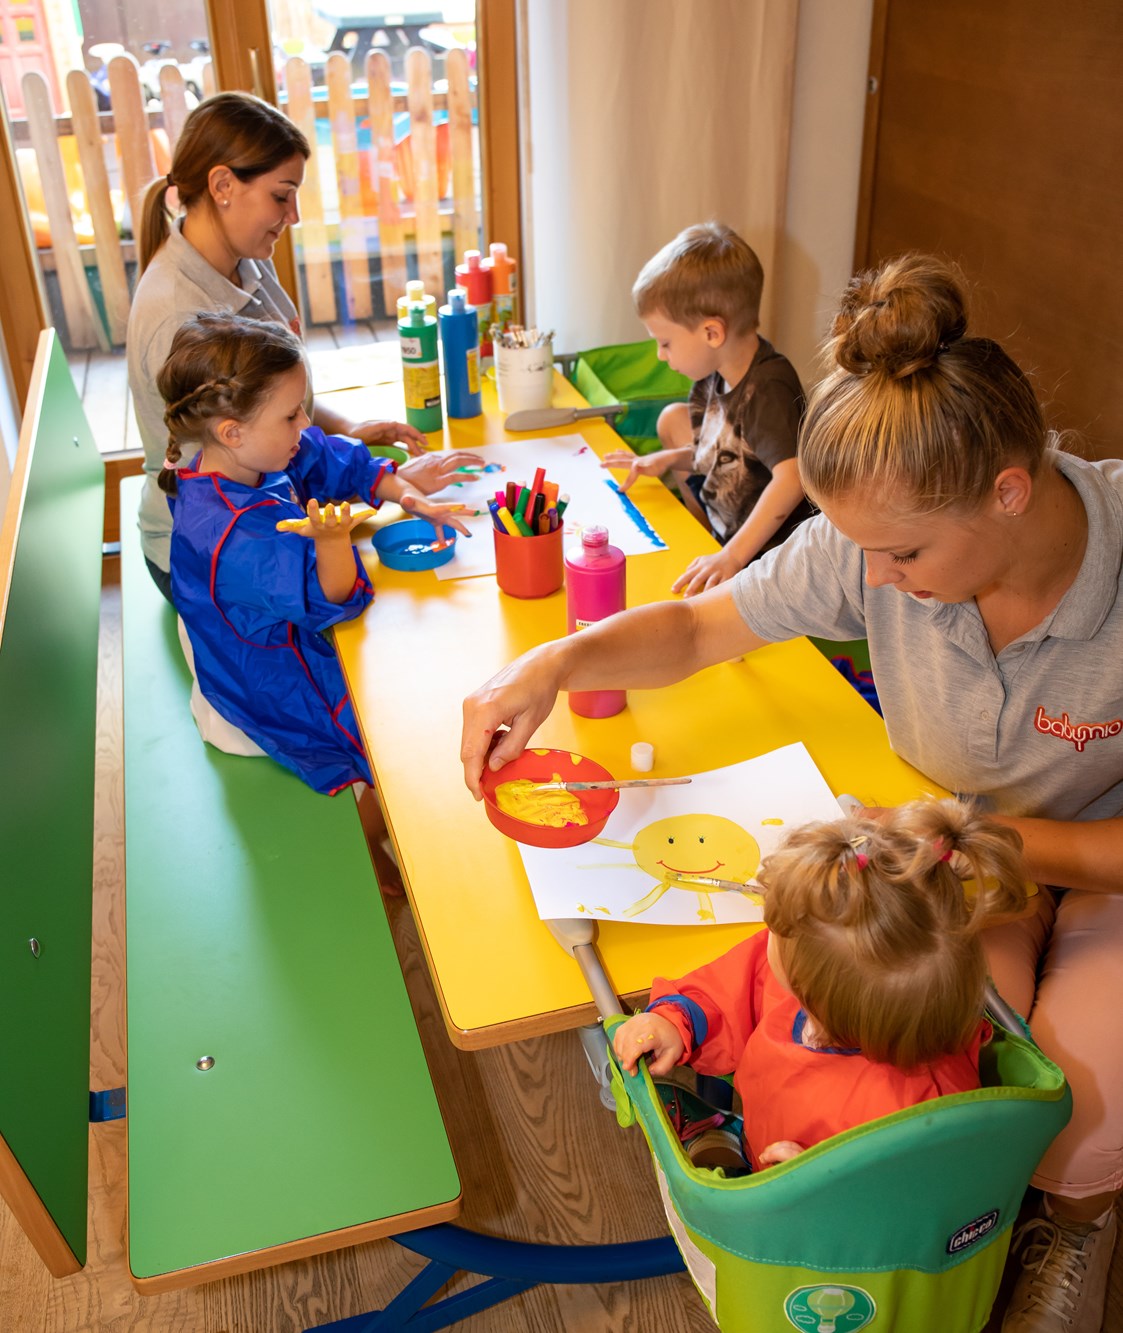 Kinderhotel: Baby- und Kinderbetreuung in eigenen Räumlichkeiten mit Schlafraum, Küche und eigenem Frischluftbereich - Hotel babymio